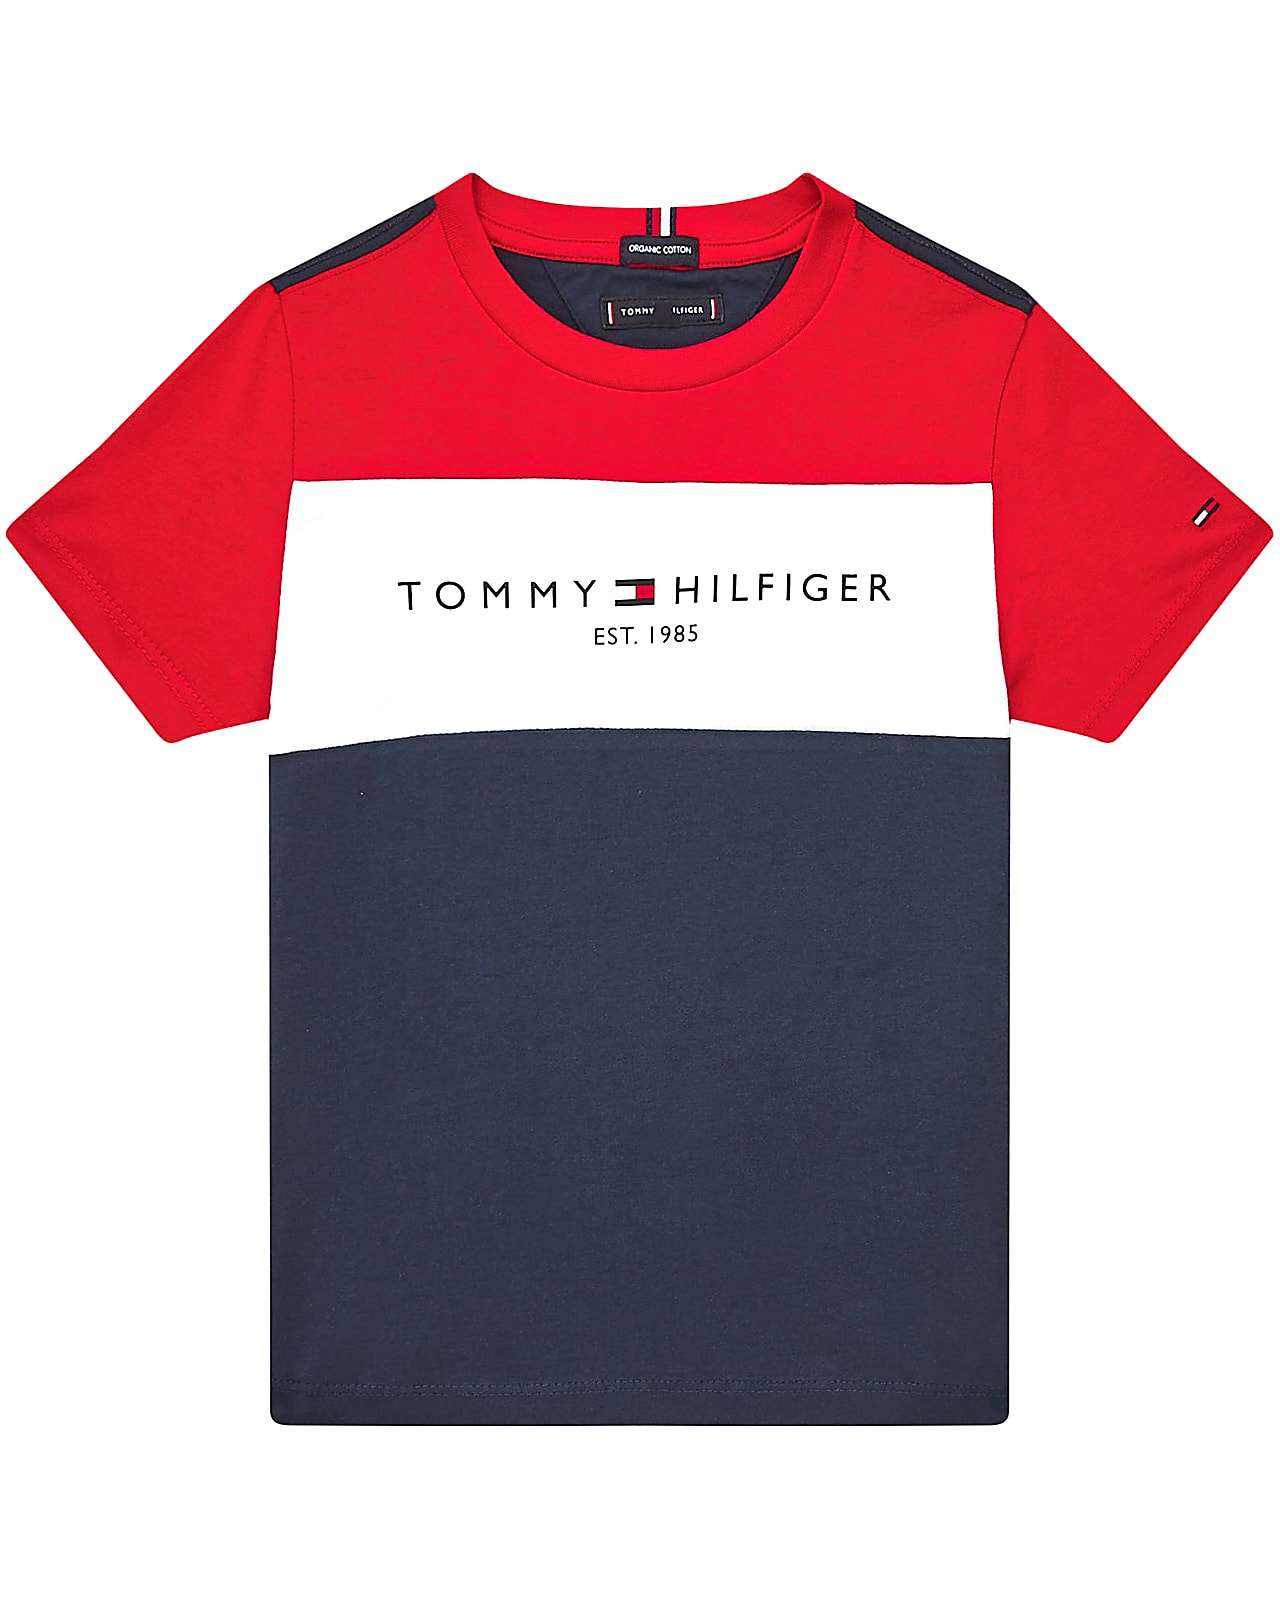 Tommy Hilfiger t-shirt s/s, Essential, twilightnavy. slags overdele til børn, teens og voksne